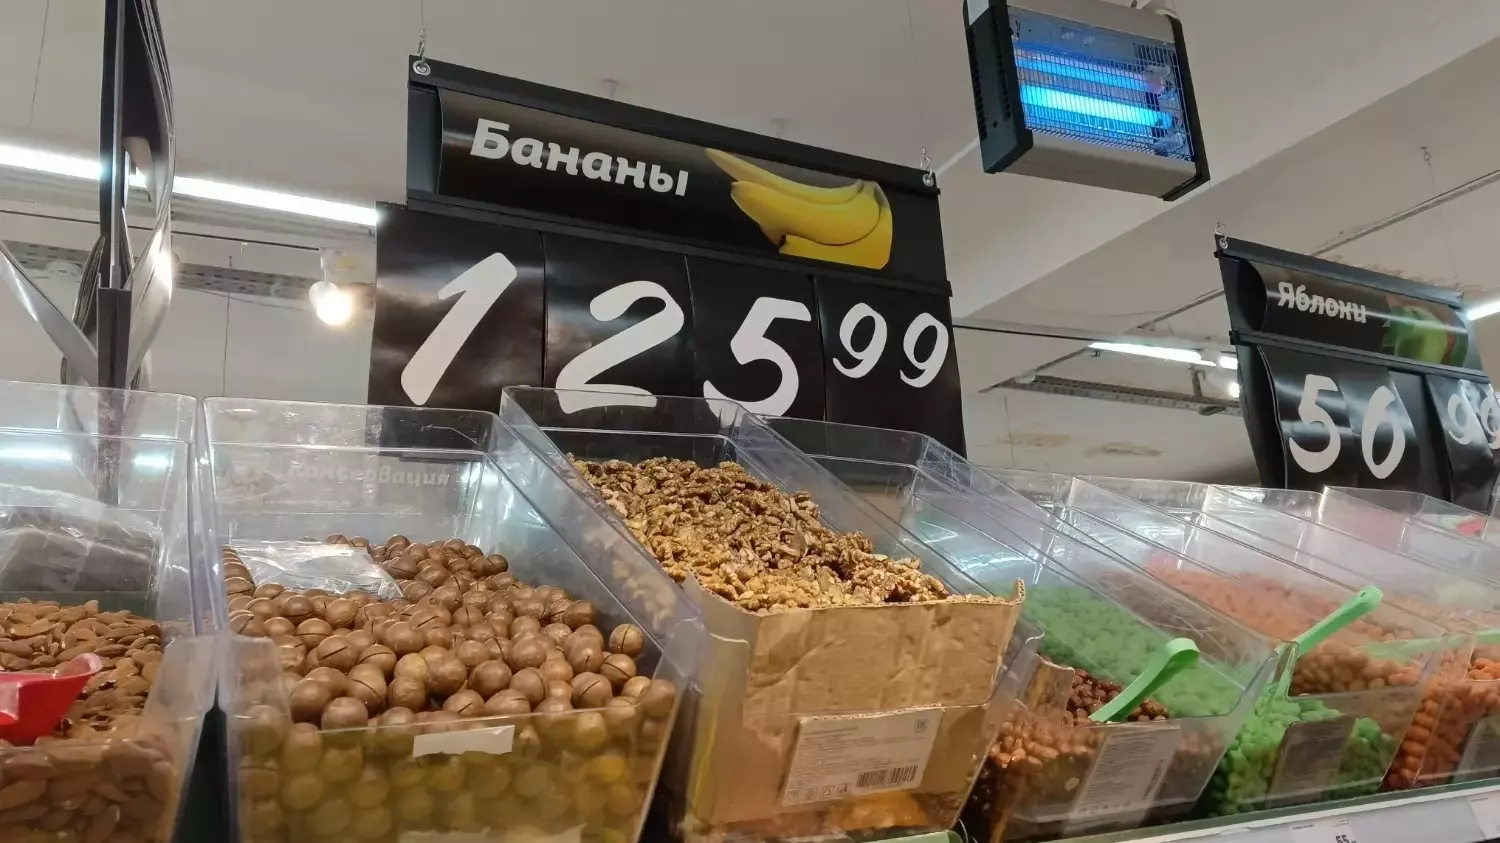 Сентябрьский ценник на бананы в «Магните» в Белгороде